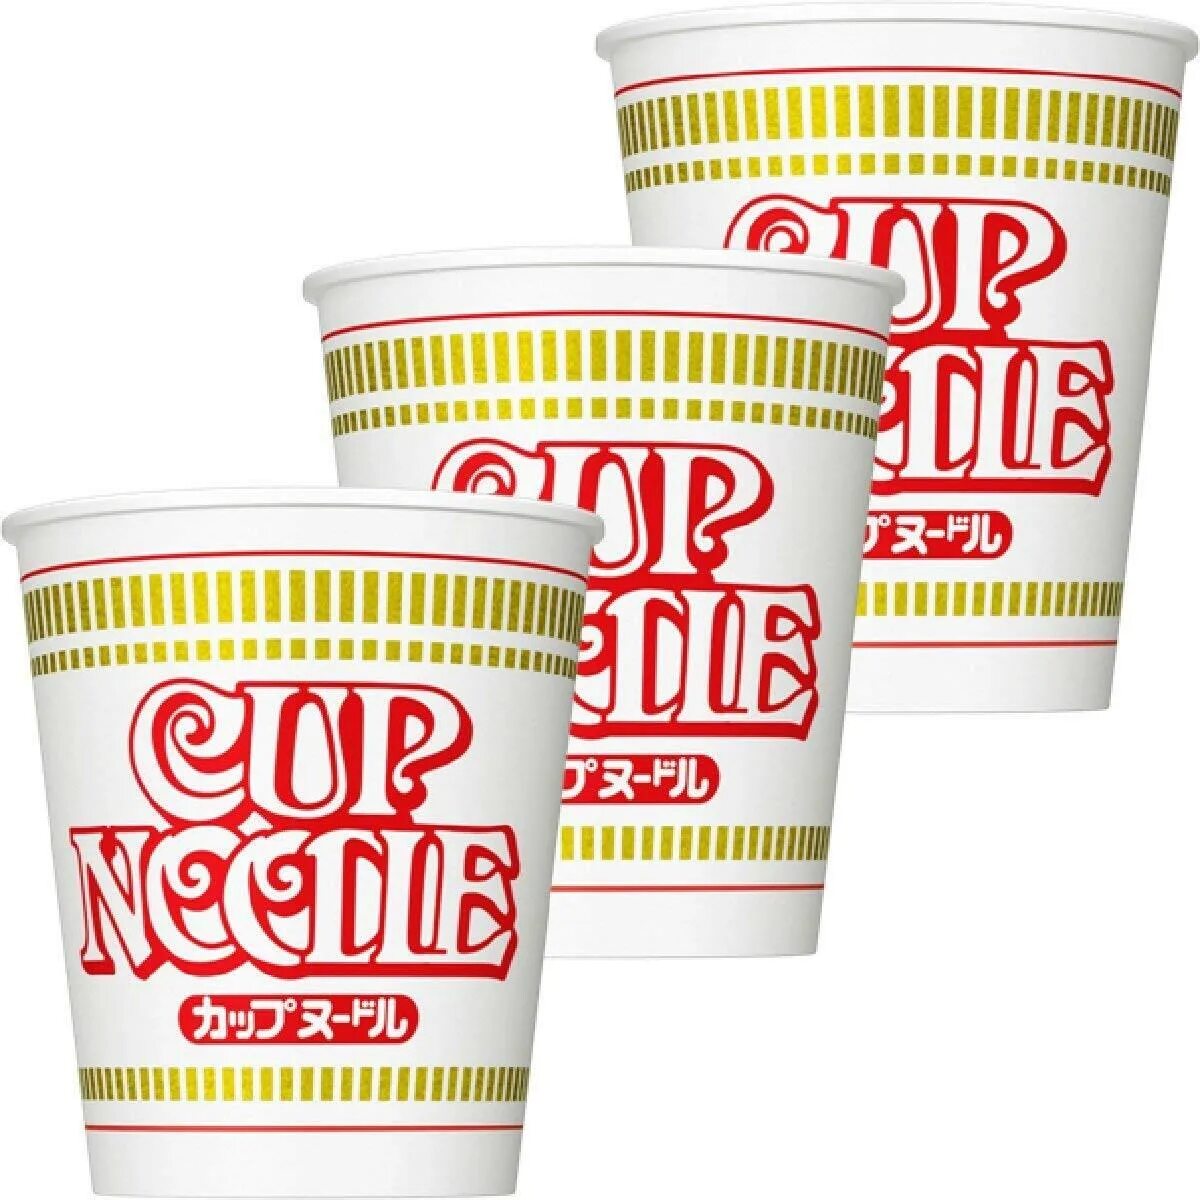 Cup лапша. Лапша Cup Ramen 90е. Японская лапша Cup Noodle. Лапша Nissin Cup Noodle из Японии. Японская лапша быстрого приготовления кап нудл.